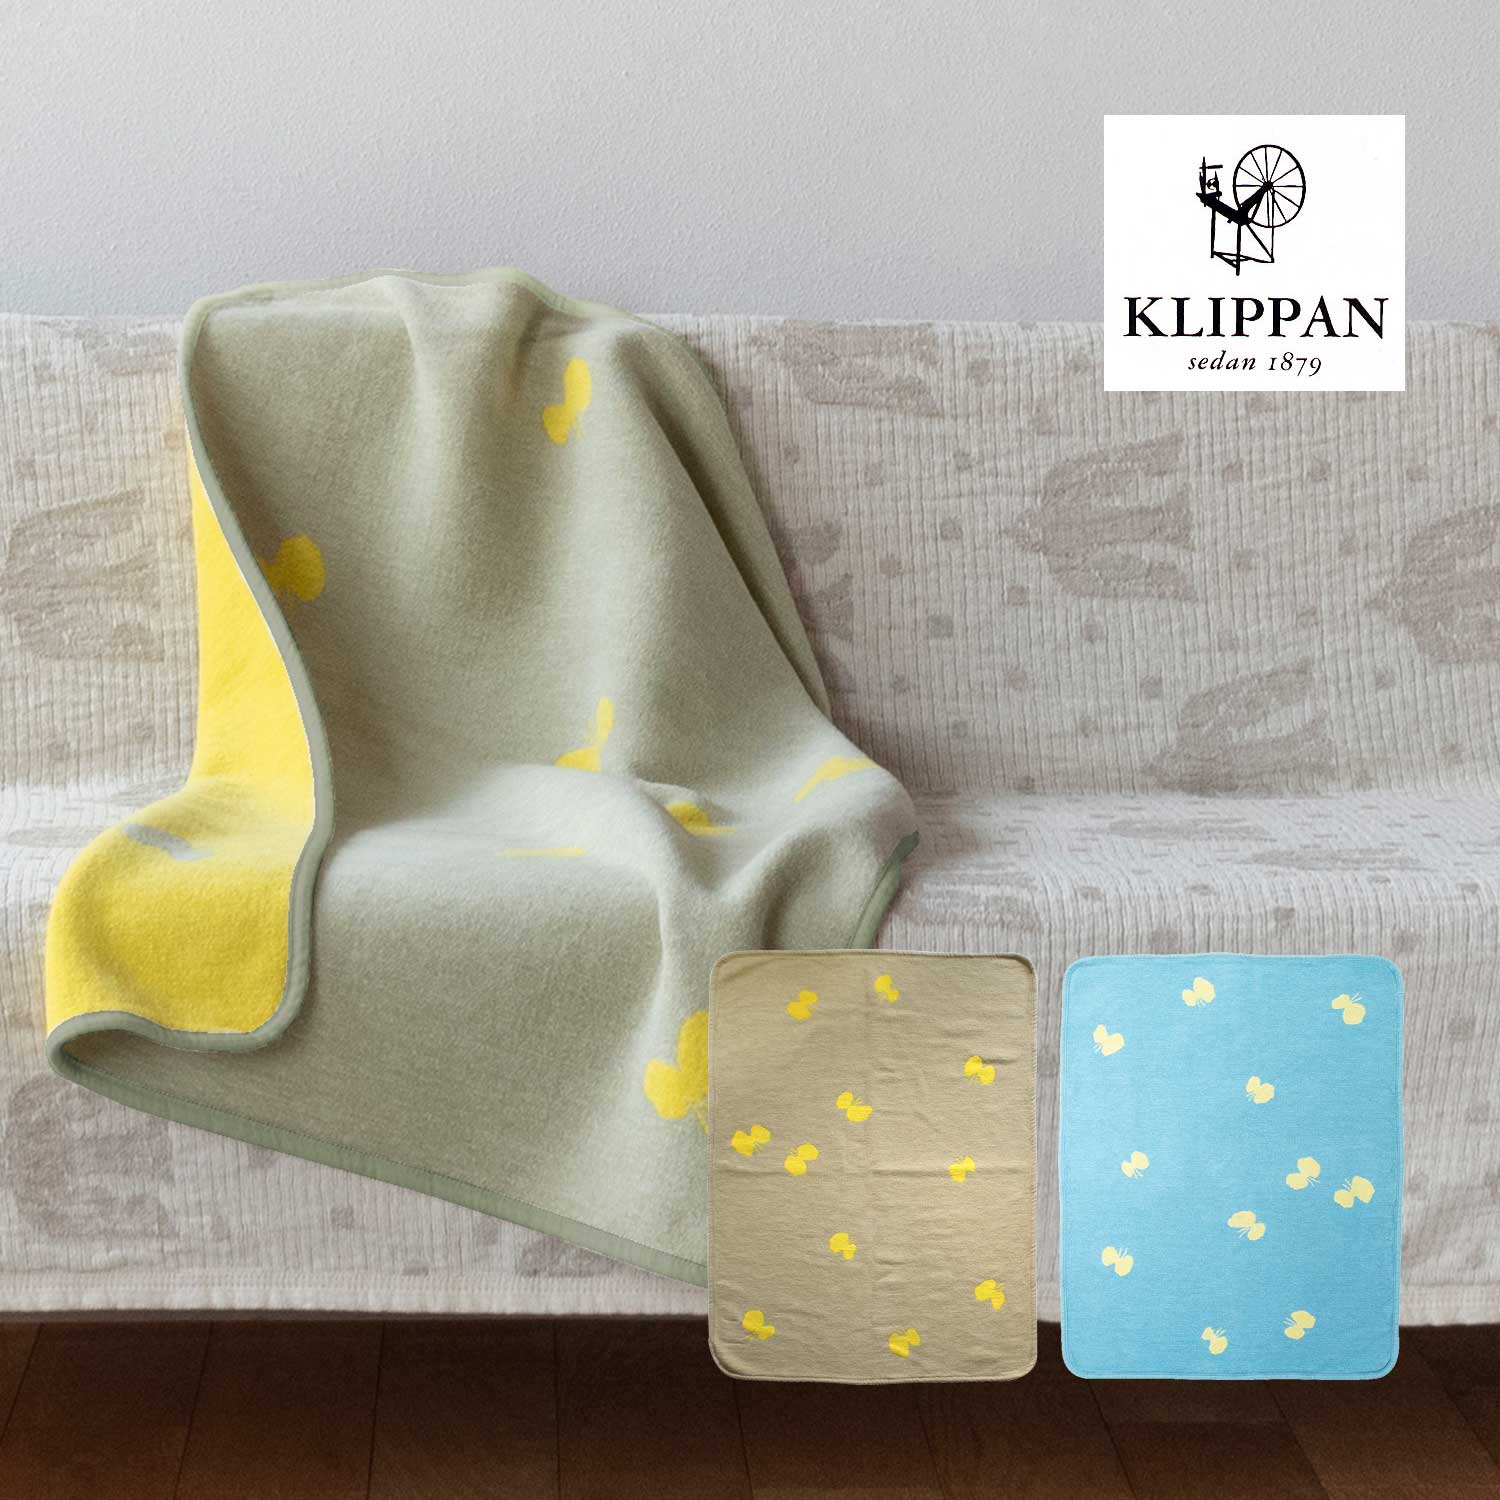 クリッパン ブランケット KLIPPAN blanket ミナペルホネン コラボ